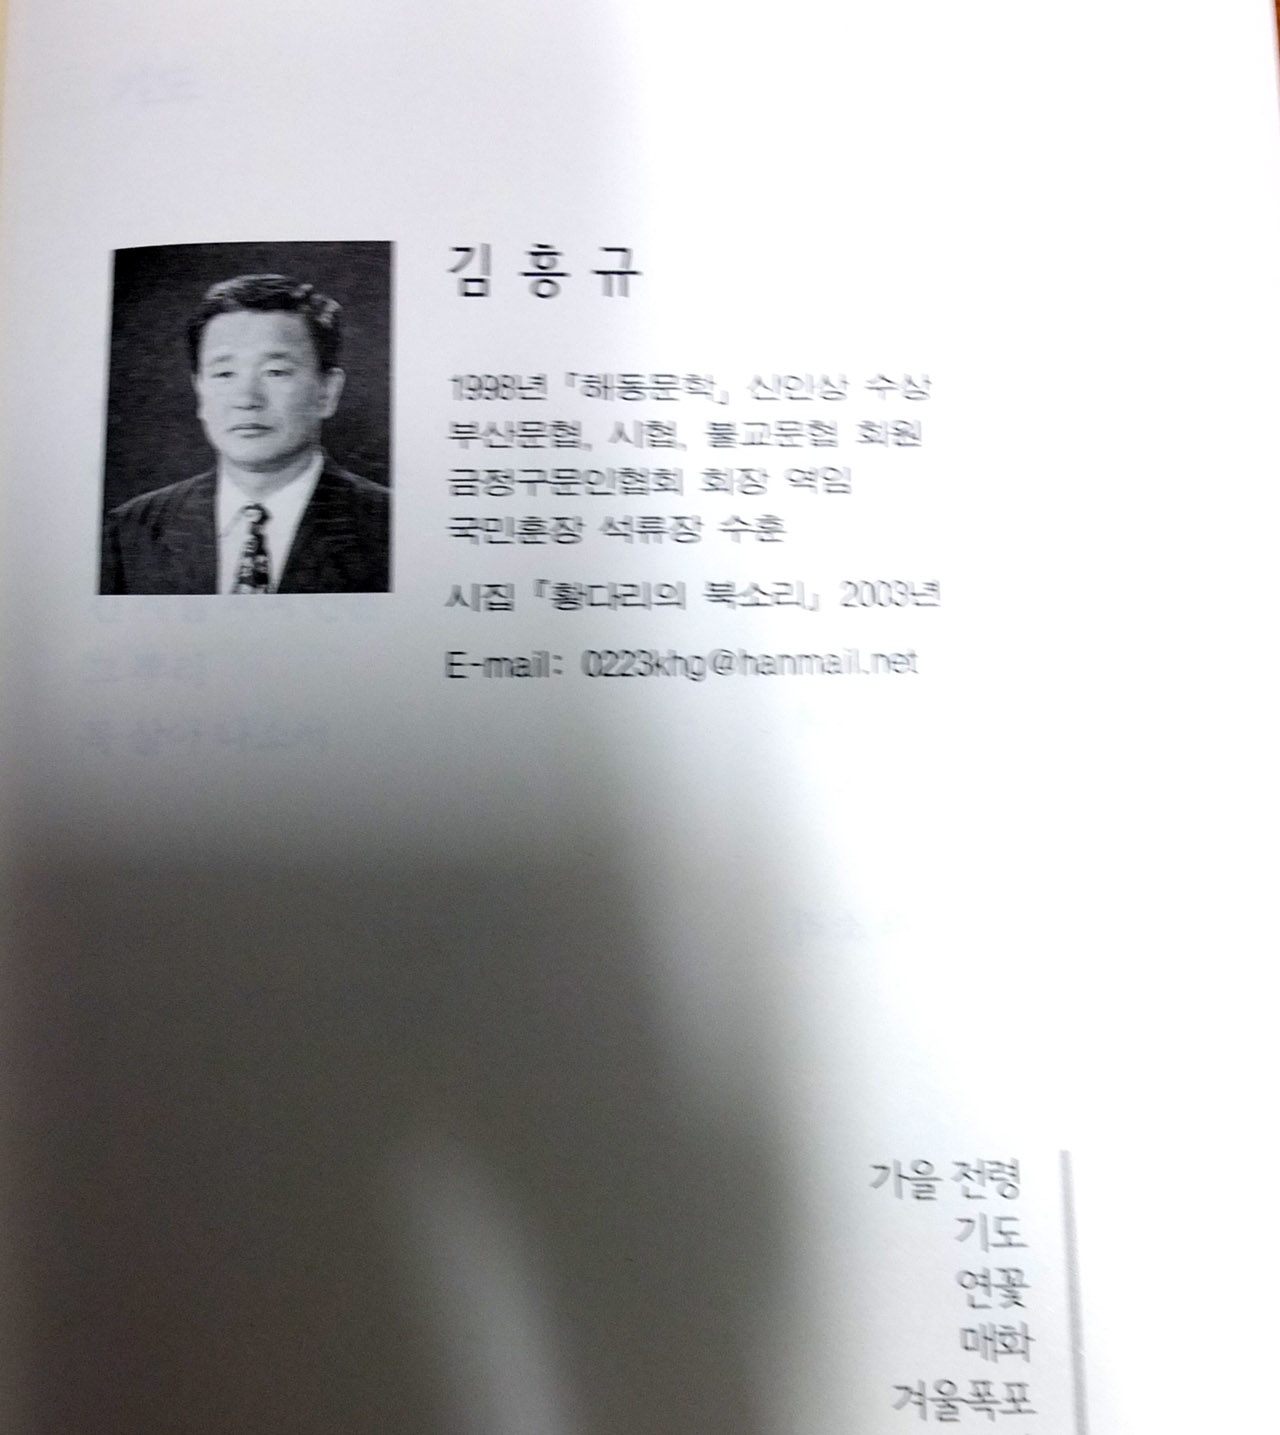 '밑 그림은 부산해동문학 제7집' 어선의 깃발되어'에서 김흥규 시인이 쓴 시의 첫장을 찍은 것이다.